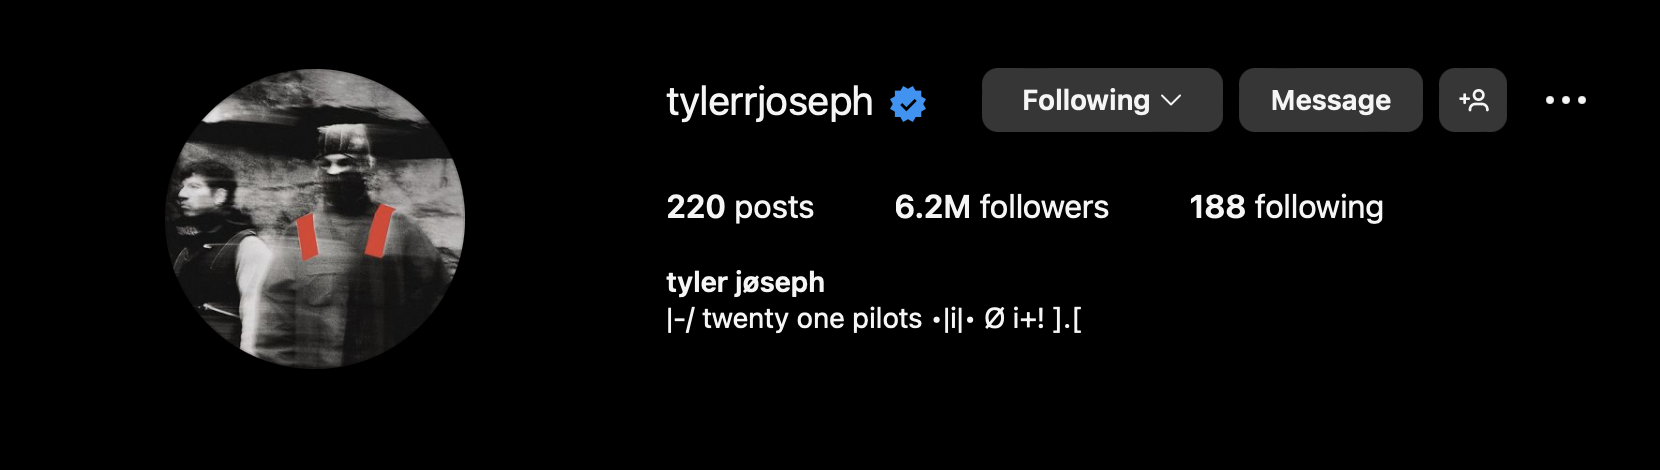 Alt text: Tyler&#39;s Joseph&#39;s Instgram profile.